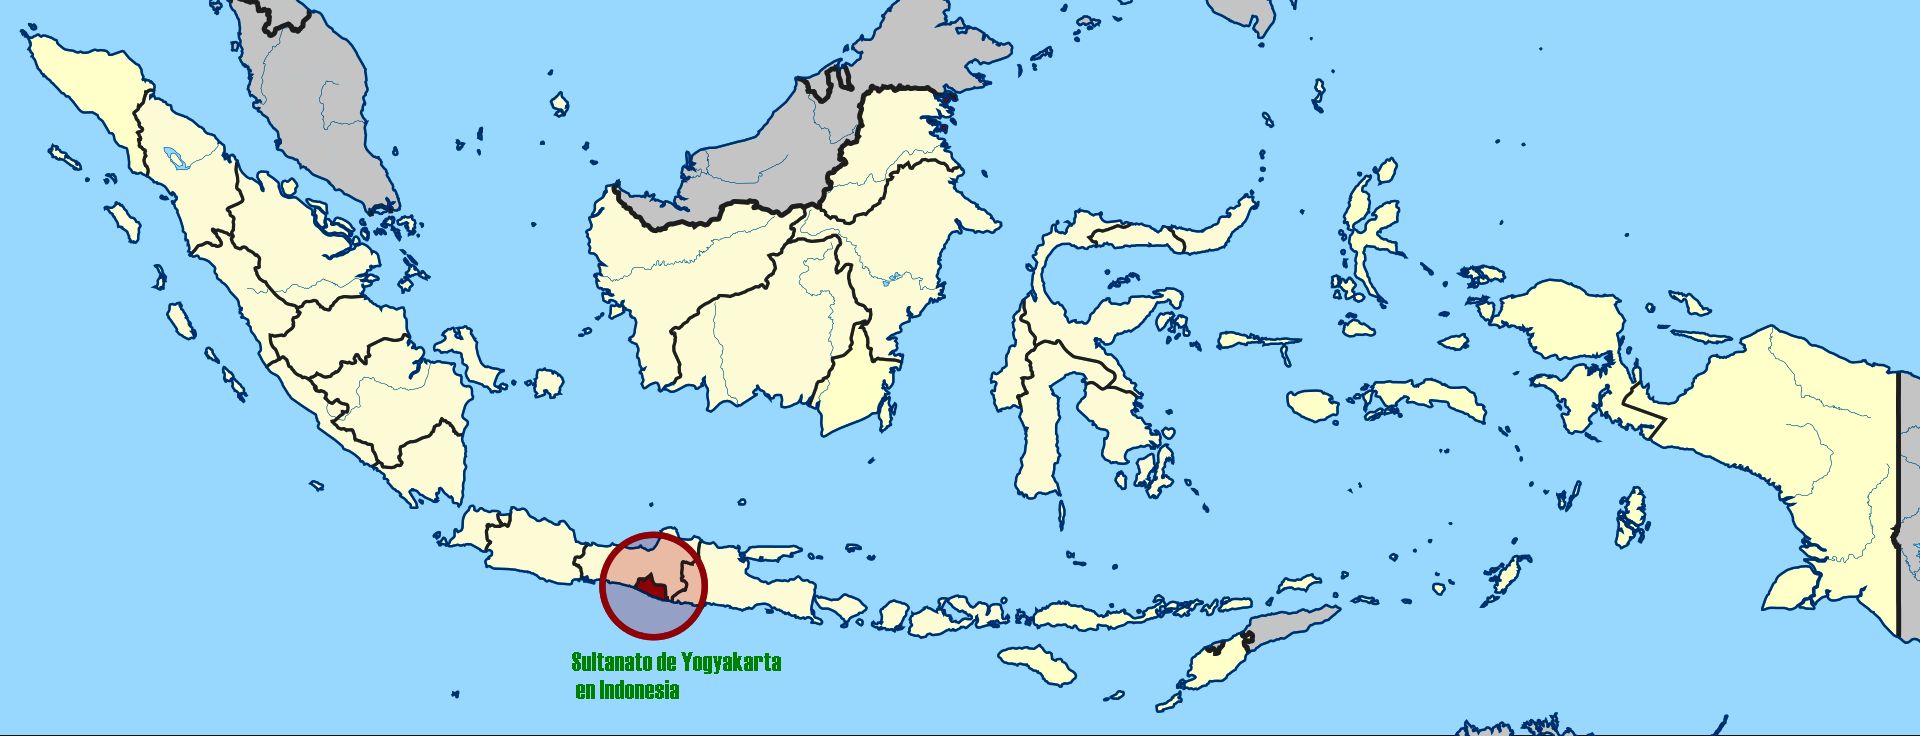 El sultanato de Yogyakarta en Indonesia